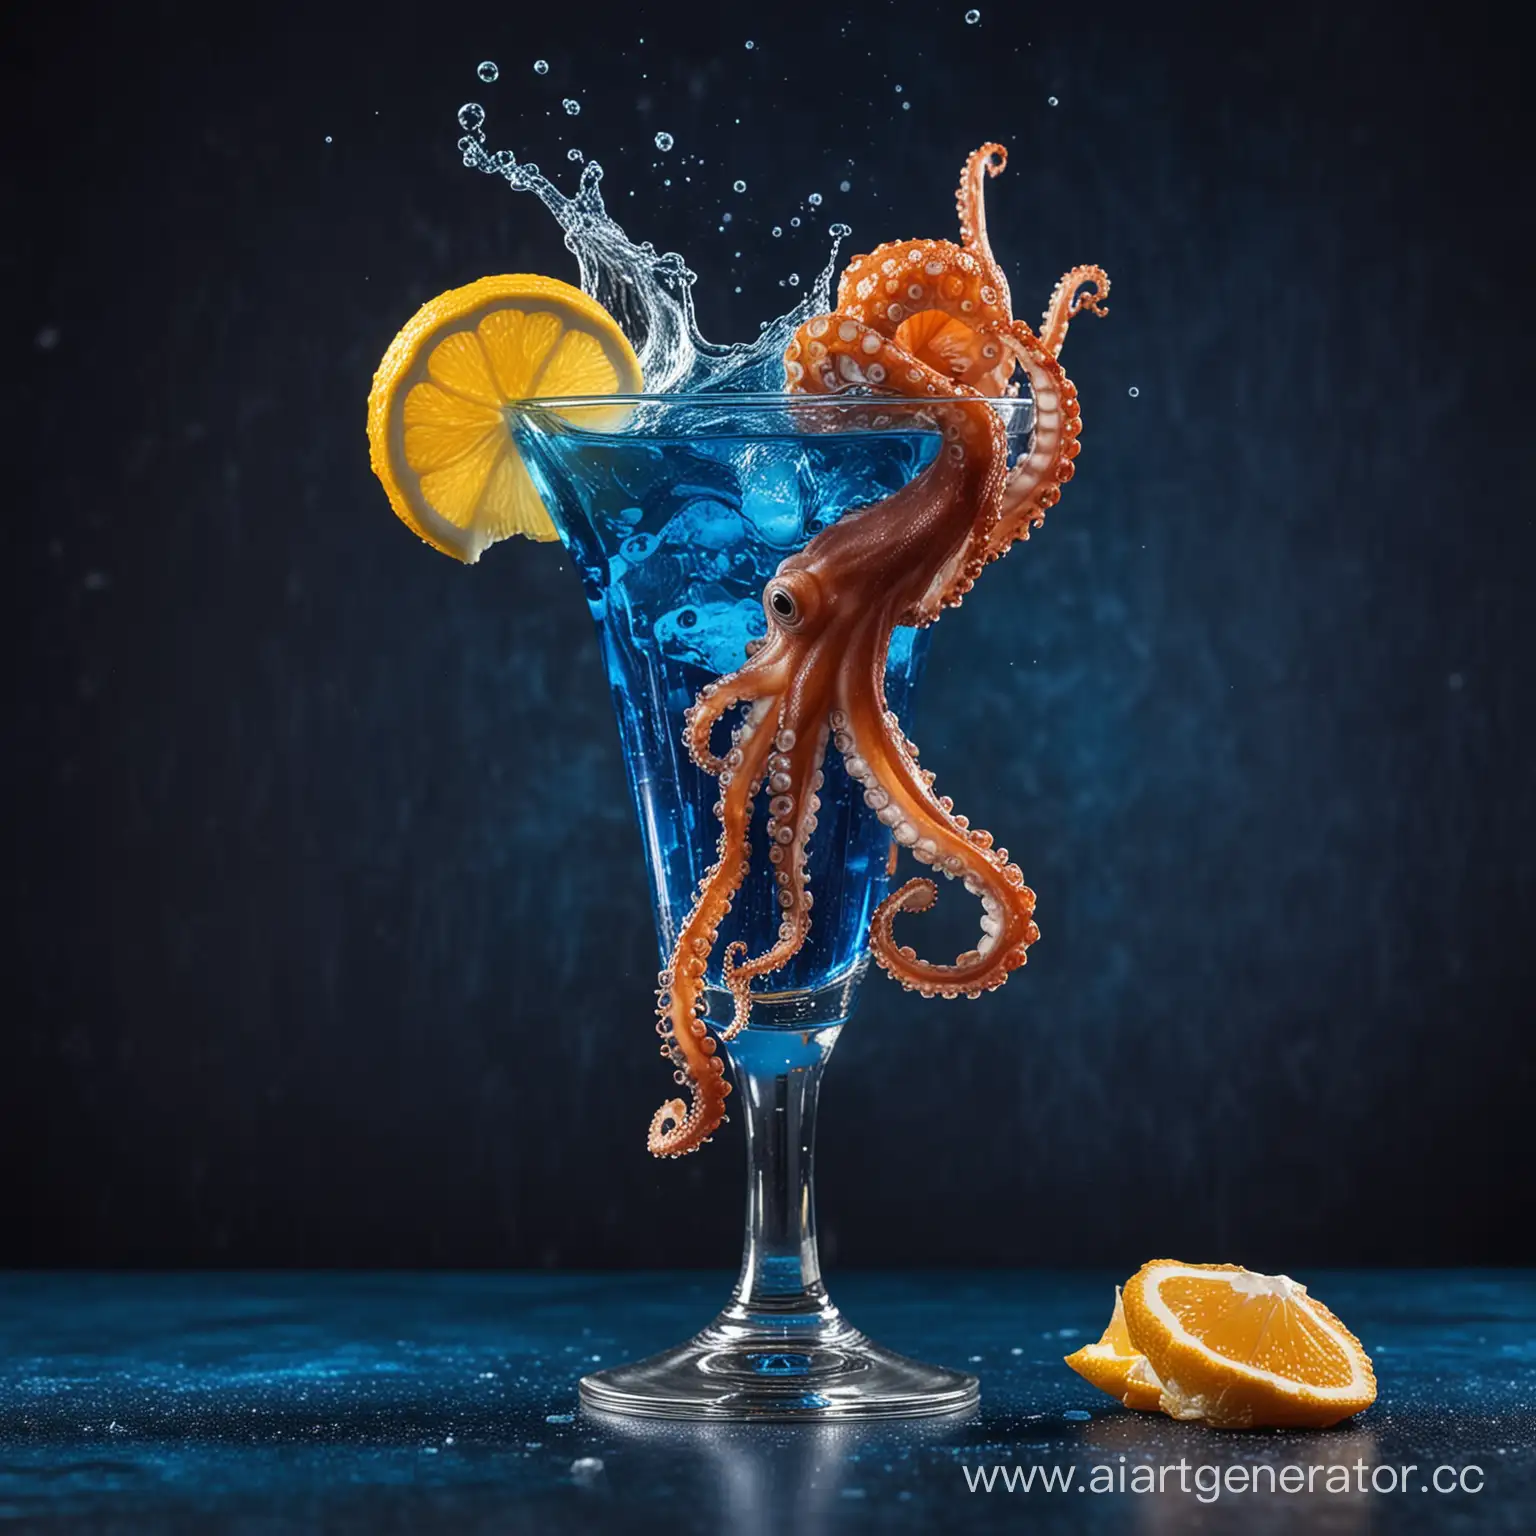 коктейль в красивом бокале на темно-синем фоне а рядом с ним осьминог и брызги 